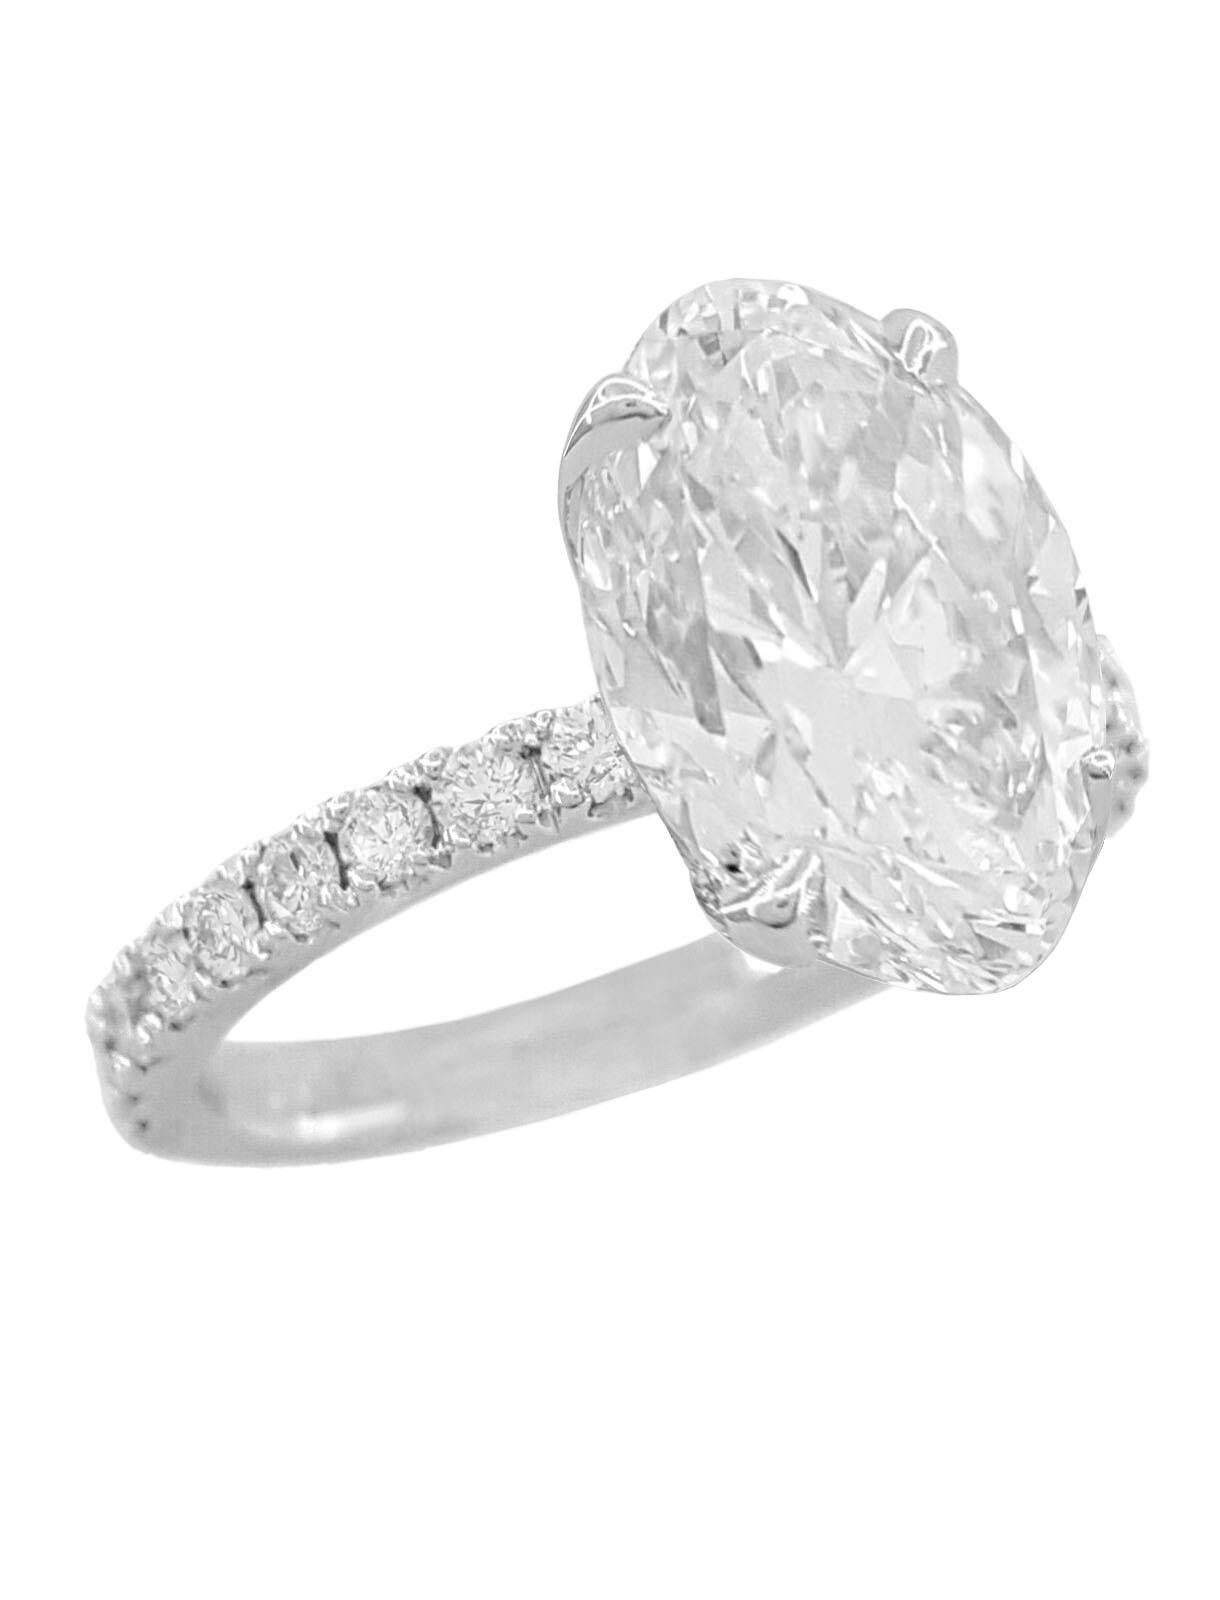 Contemporary GIA 4 Ct E Color VS Clarity Oval Brilliant Cut Diamond 18K White Gold Ring  For Sale